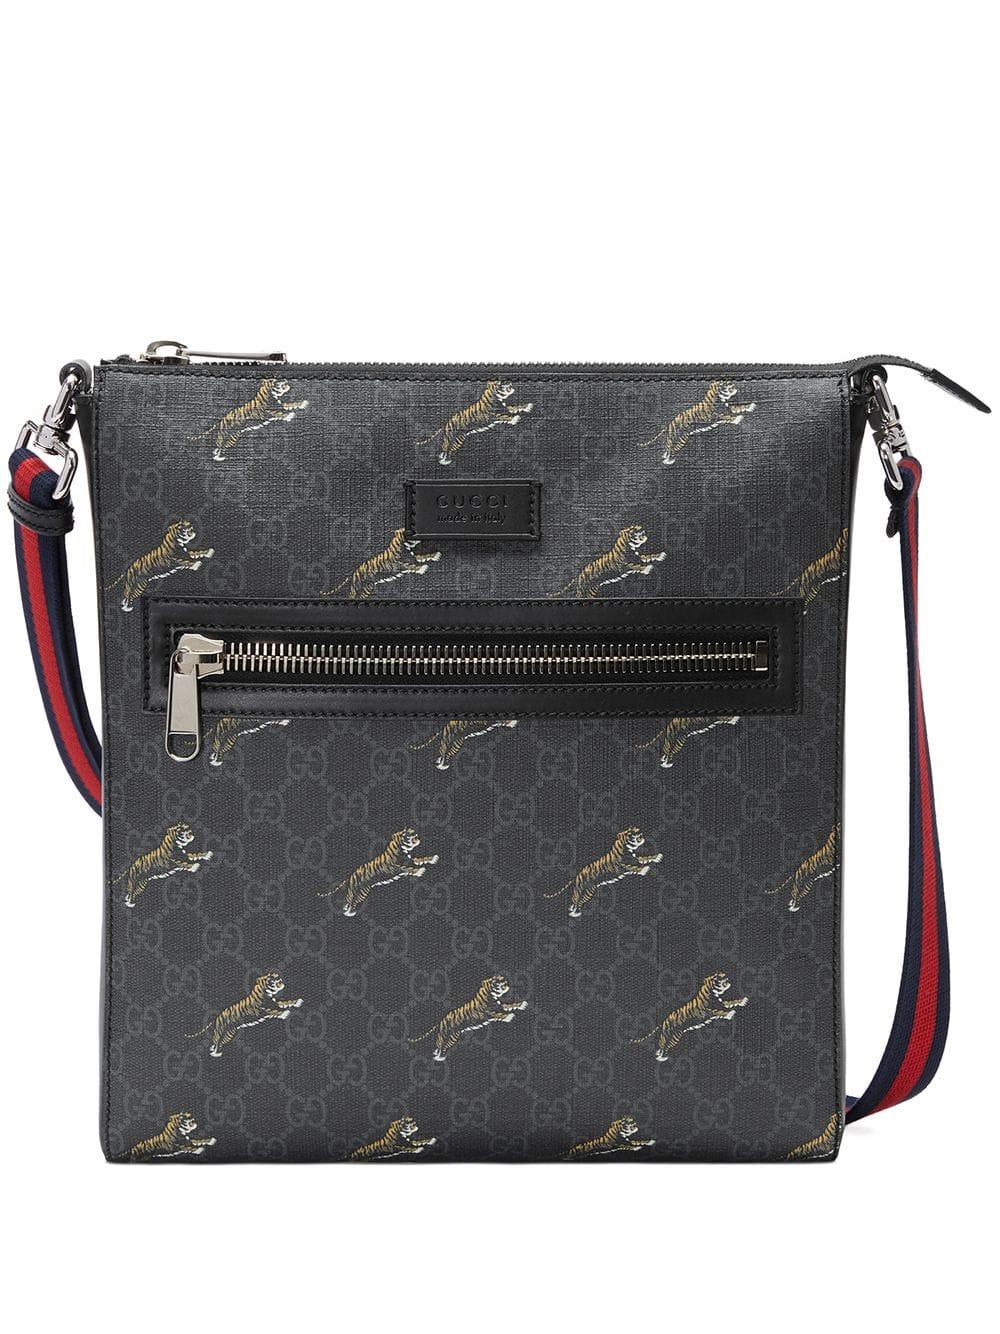 Gucci Tiger Messenger Bag | semashow.com